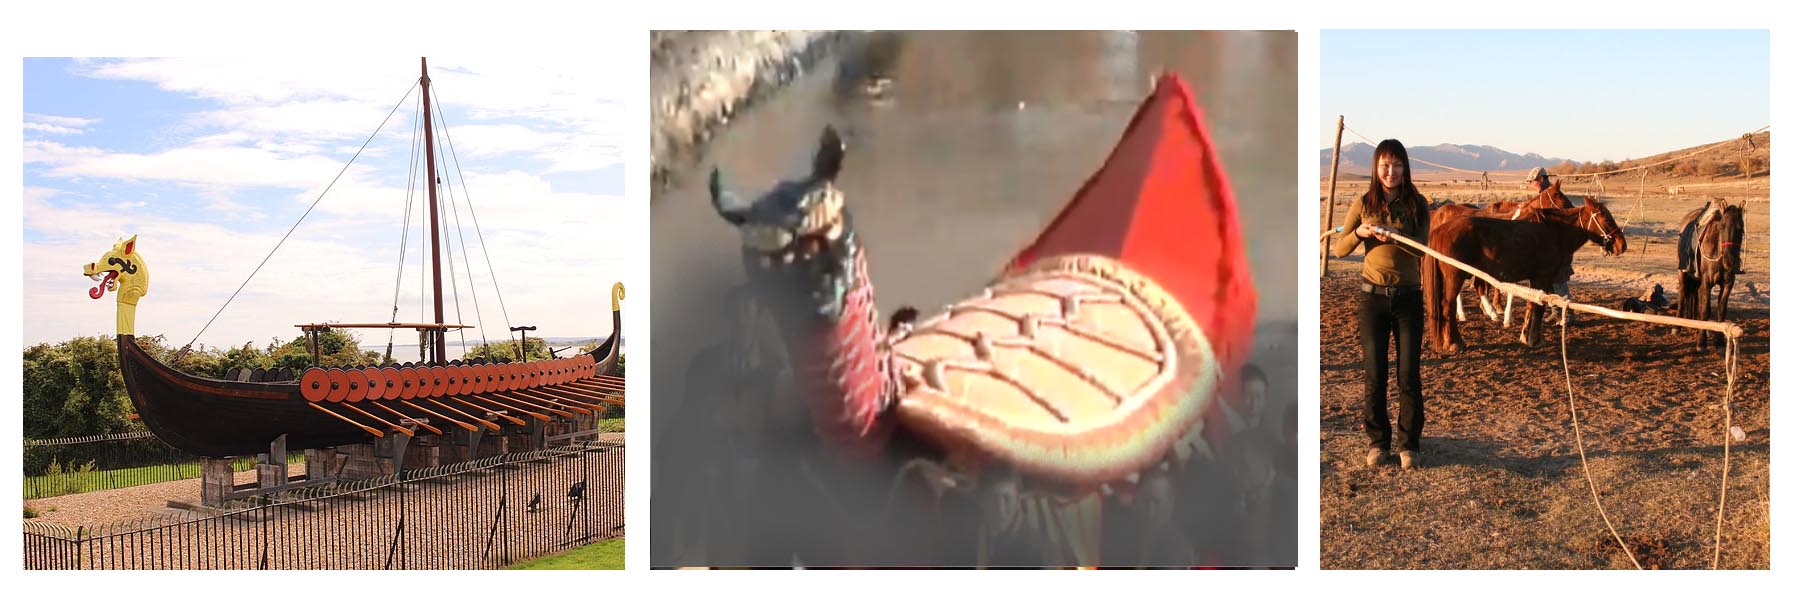 (왼쪽) 복원된 9세기 바이킹족의 배. 선두에 용머리가 달려 있다. (가운데) 야쯔시로 묘켄 마쯔리에서 사용되는 거북 모형. 묘켄이 타고 왔다는 거북을 상징한다. (오른쪽) 몽고인들이 말을 포획할 때 사용하는 도구 우르가. 전통사회에서 이런 도구들은 종종 전투시 인간에 대해서도 사용됐다. 출처: (왼쪽부터) Wikipedia Creative Commons, 2019년도 야쯔시로 묘켄마쯔리 녹화영상 캡쳐, Flickr 이미지